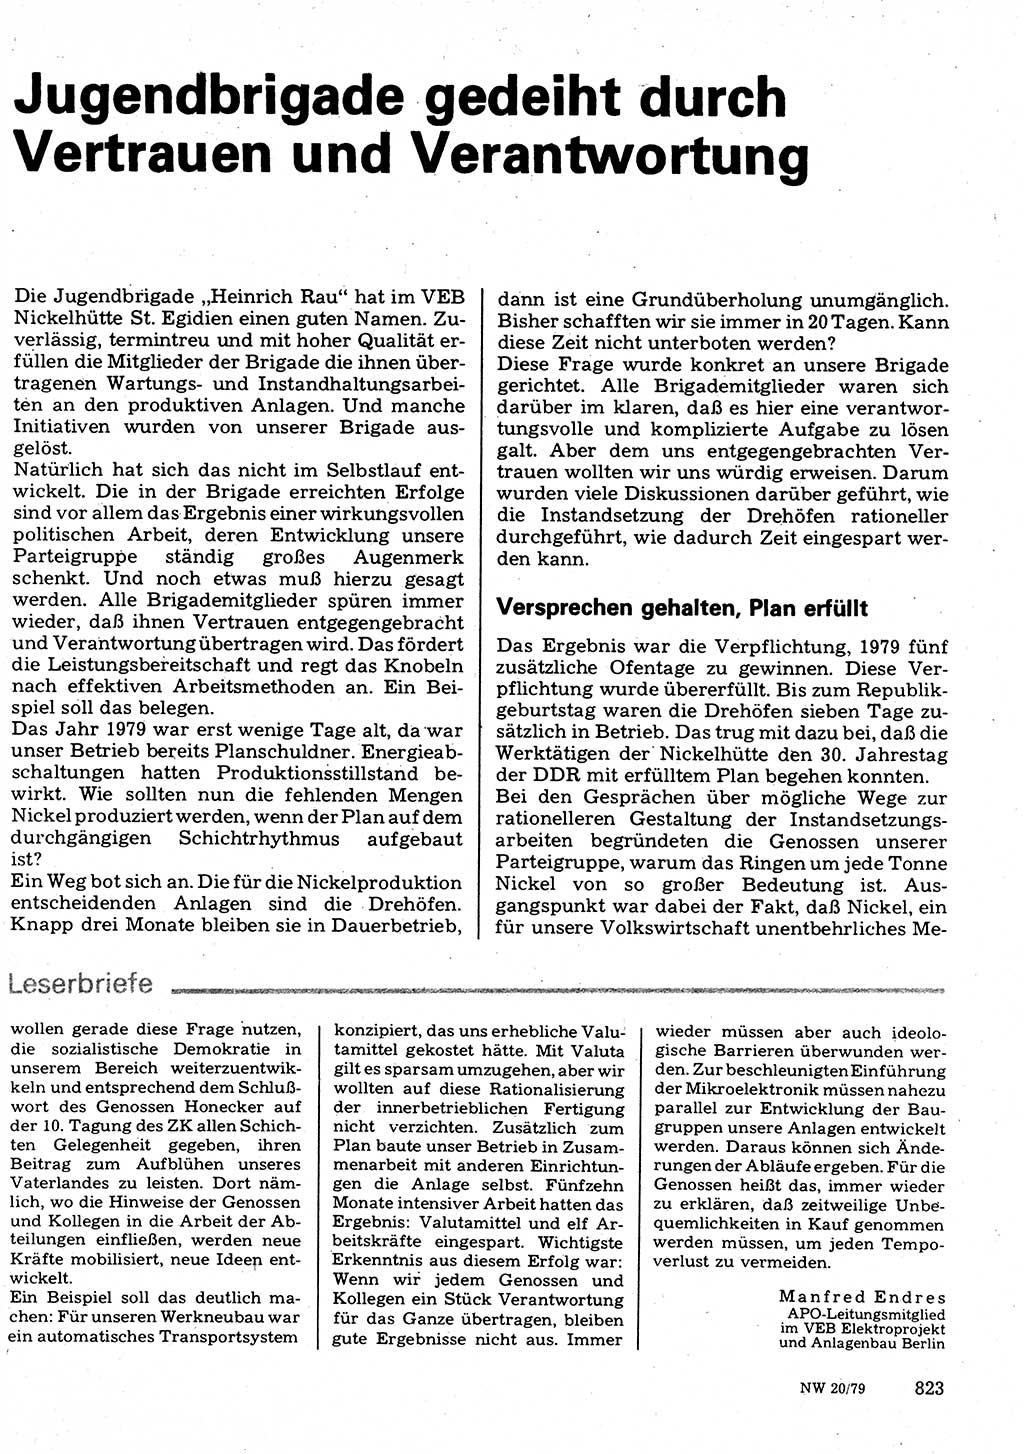 Neuer Weg (NW), Organ des Zentralkomitees (ZK) der SED (Sozialistische Einheitspartei Deutschlands) für Fragen des Parteilebens, 34. Jahrgang [Deutsche Demokratische Republik (DDR)] 1979, Seite 823 (NW ZK SED DDR 1979, S. 823)